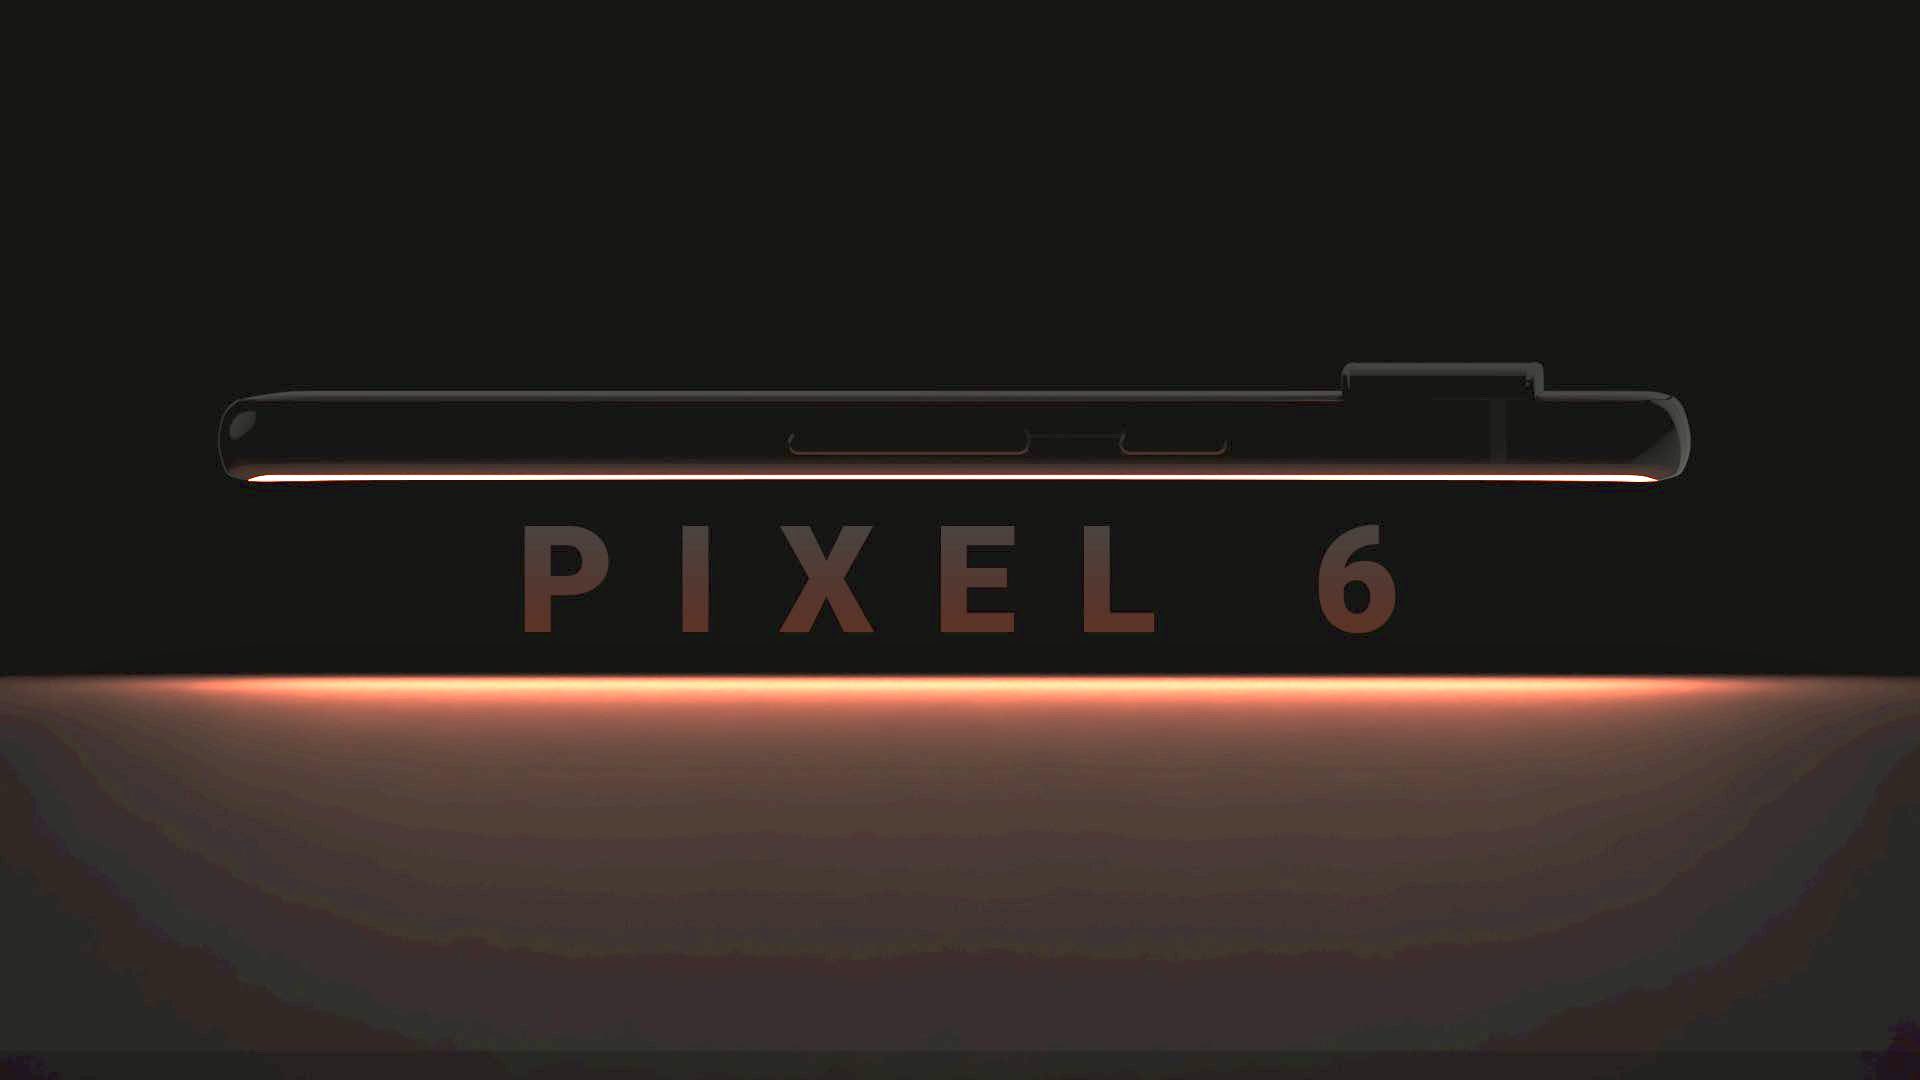 Les rendus de la tablette Google Pixel, réalisés par des fans, sont  impressionnants avec un design inspiré de la Pixel 6 et des bords à peine  visibles -  News